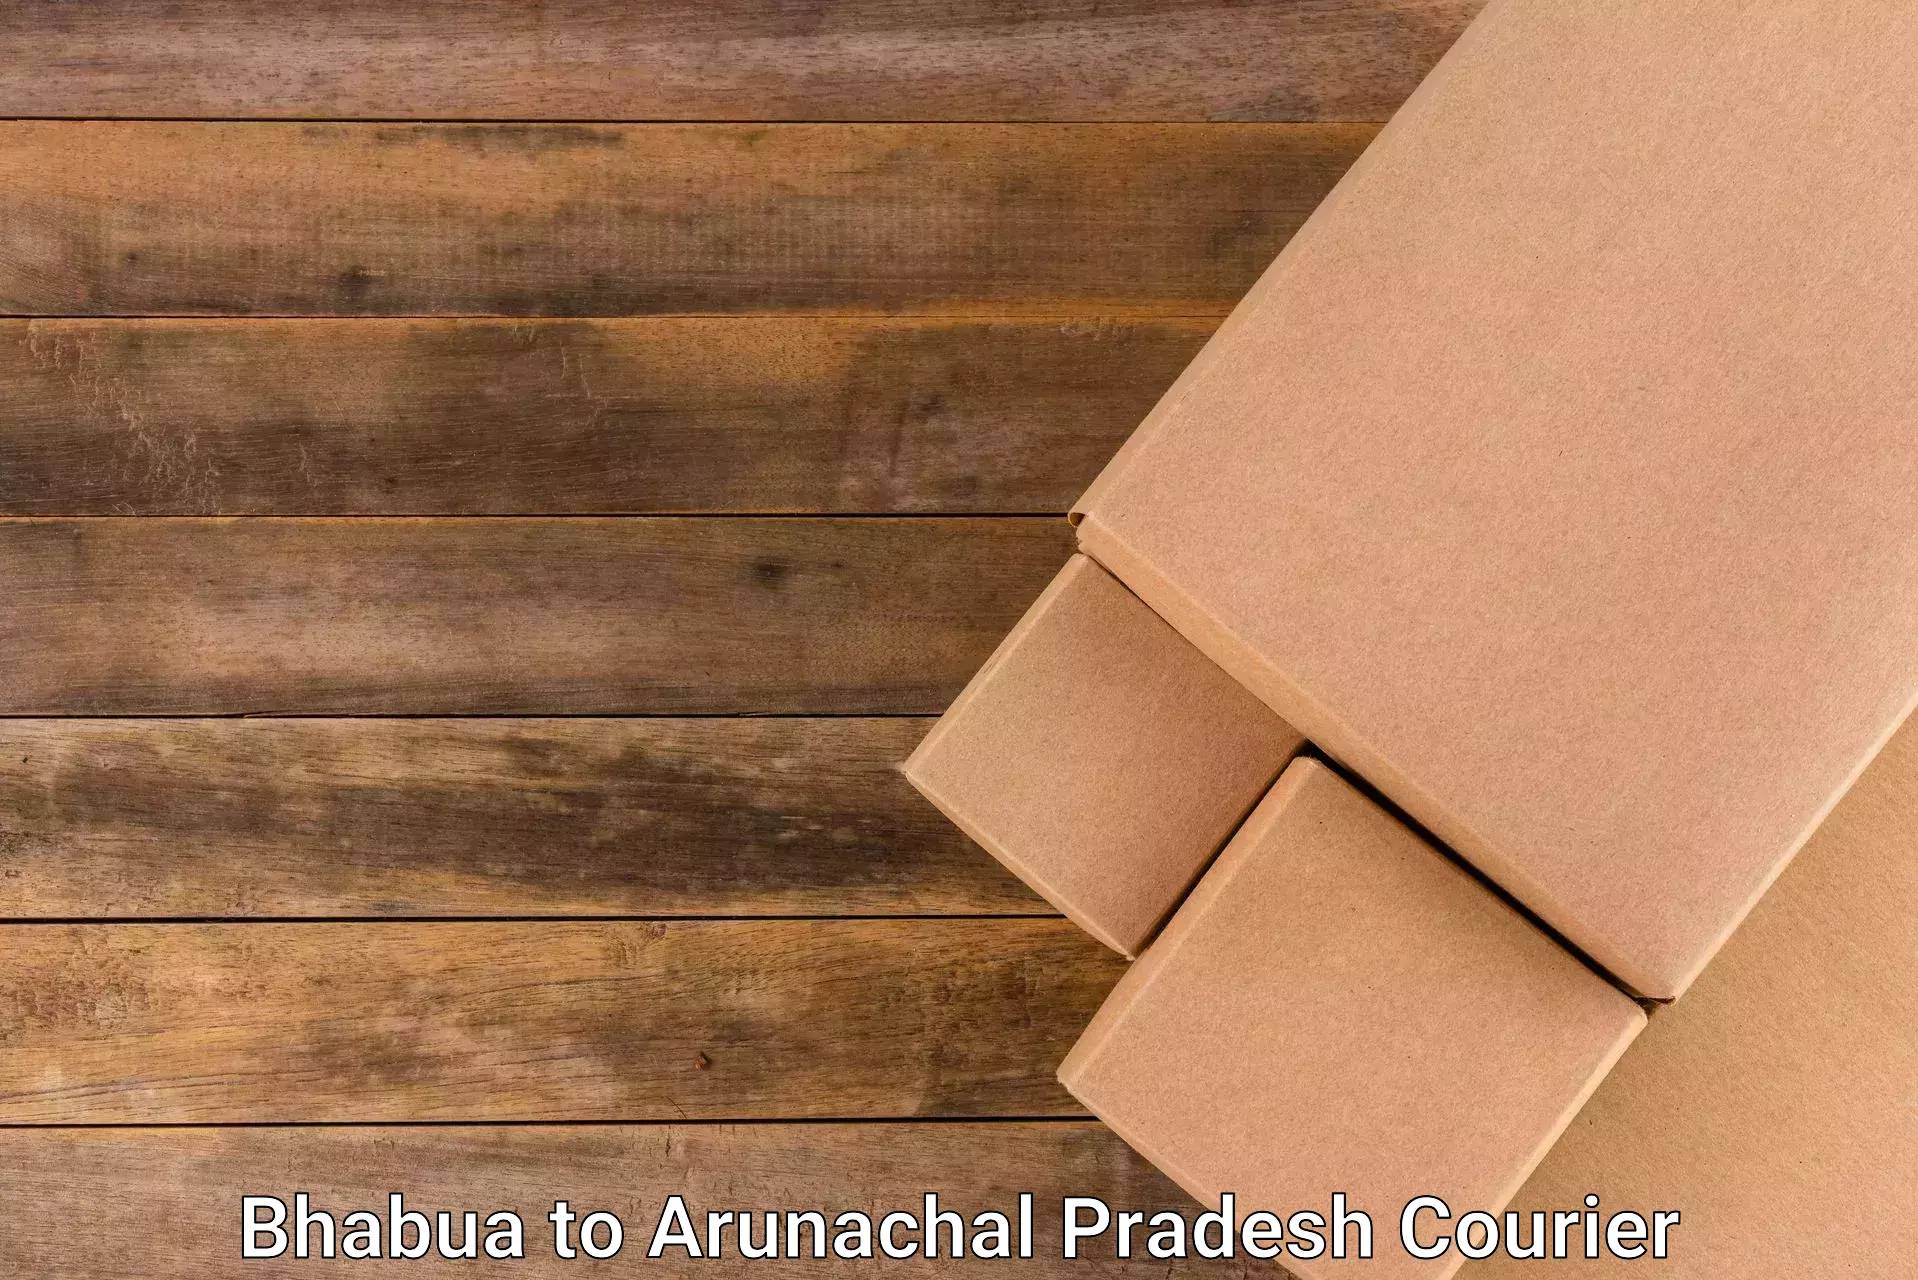 Courier membership Bhabua to Arunachal Pradesh